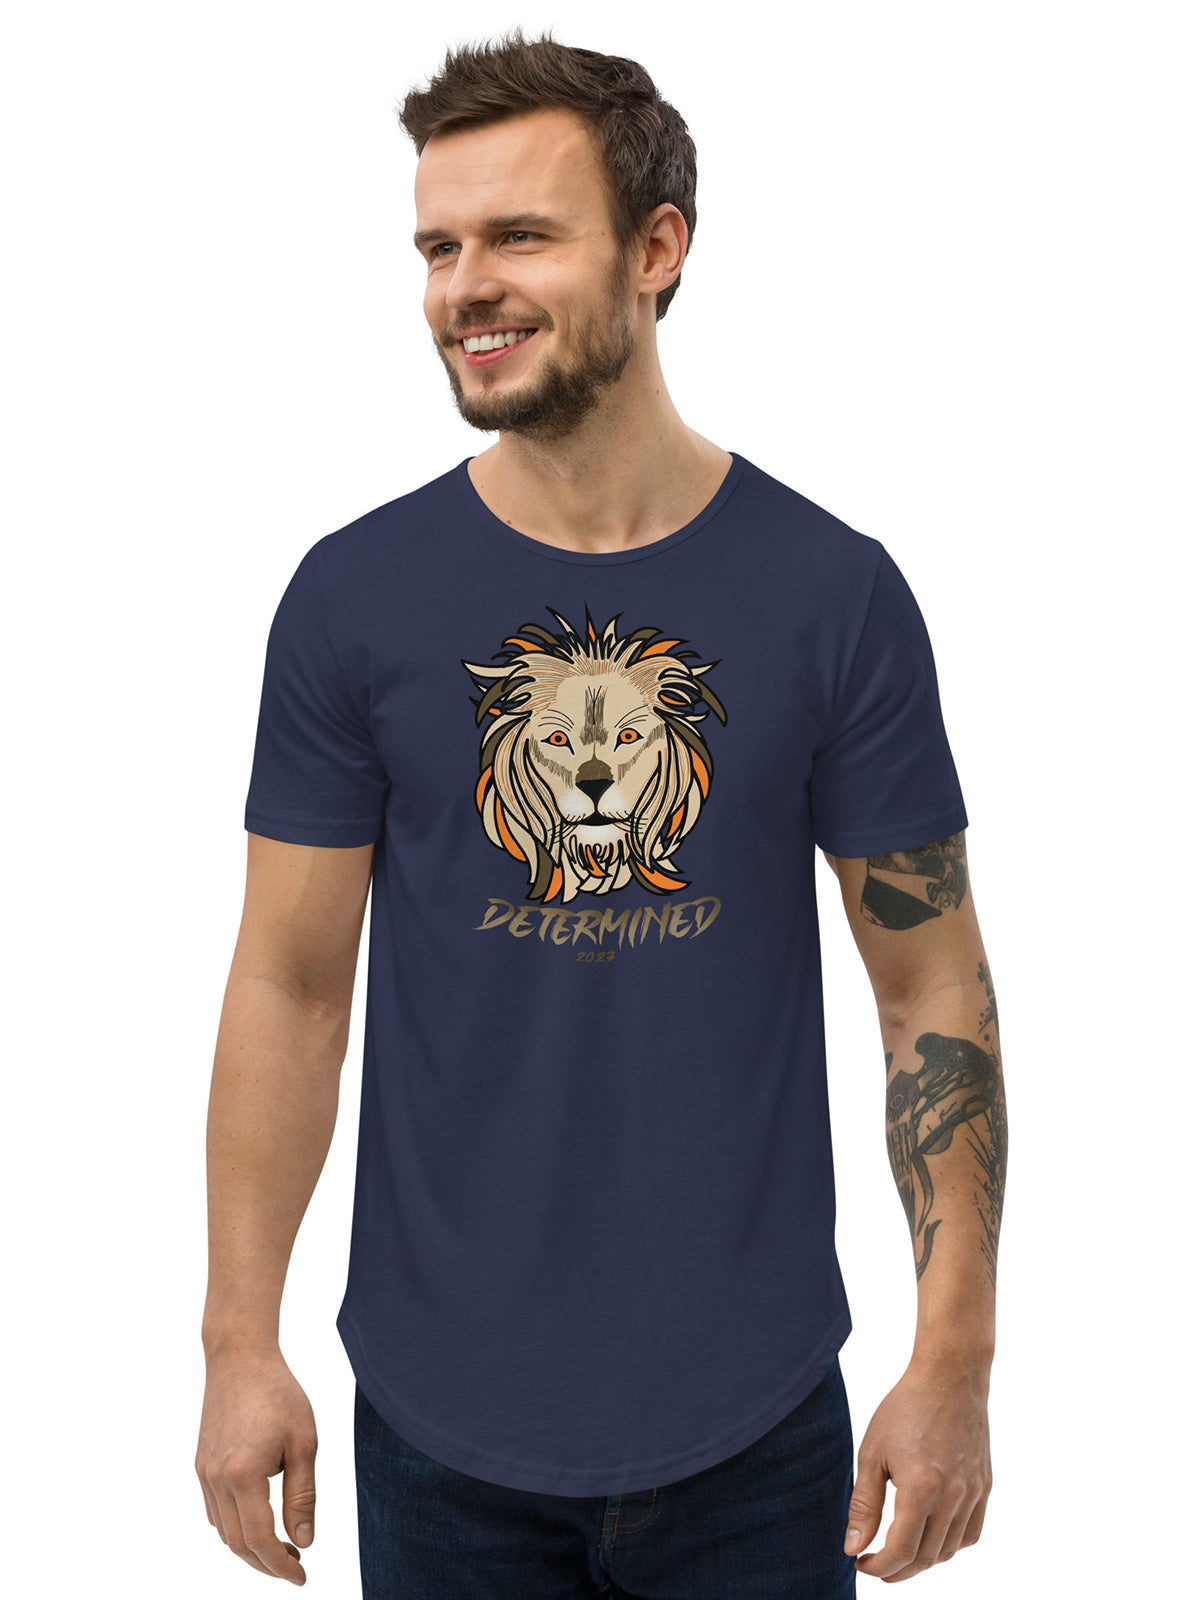 Determined Leon 2023 - Premium T-Shirt